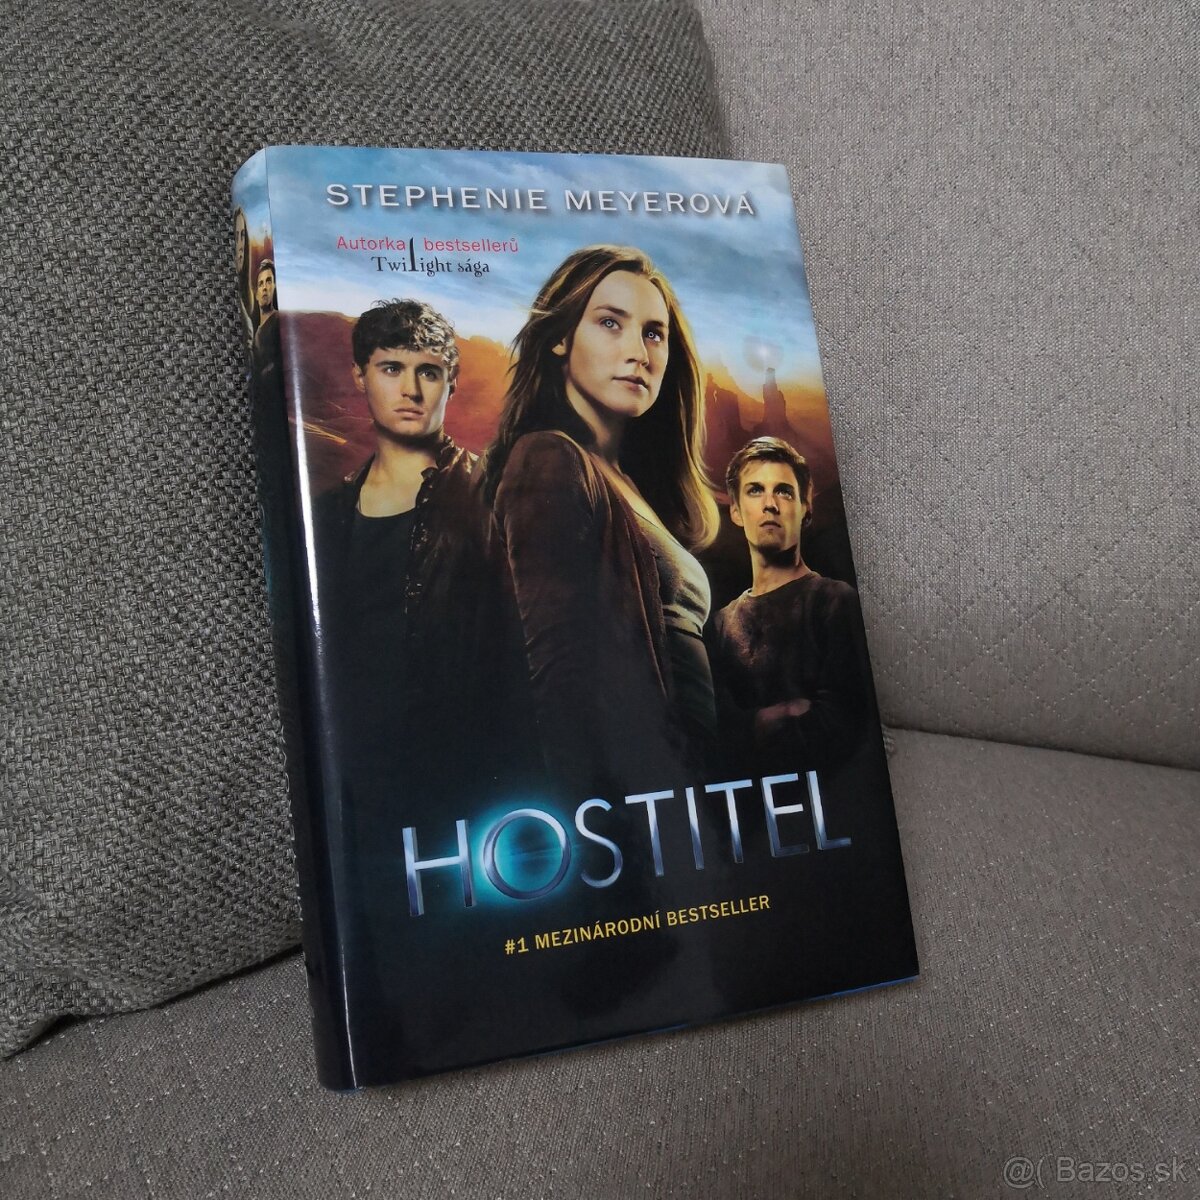 Hostitel (Stephenie Meyer) filmový přebal 2. vydání